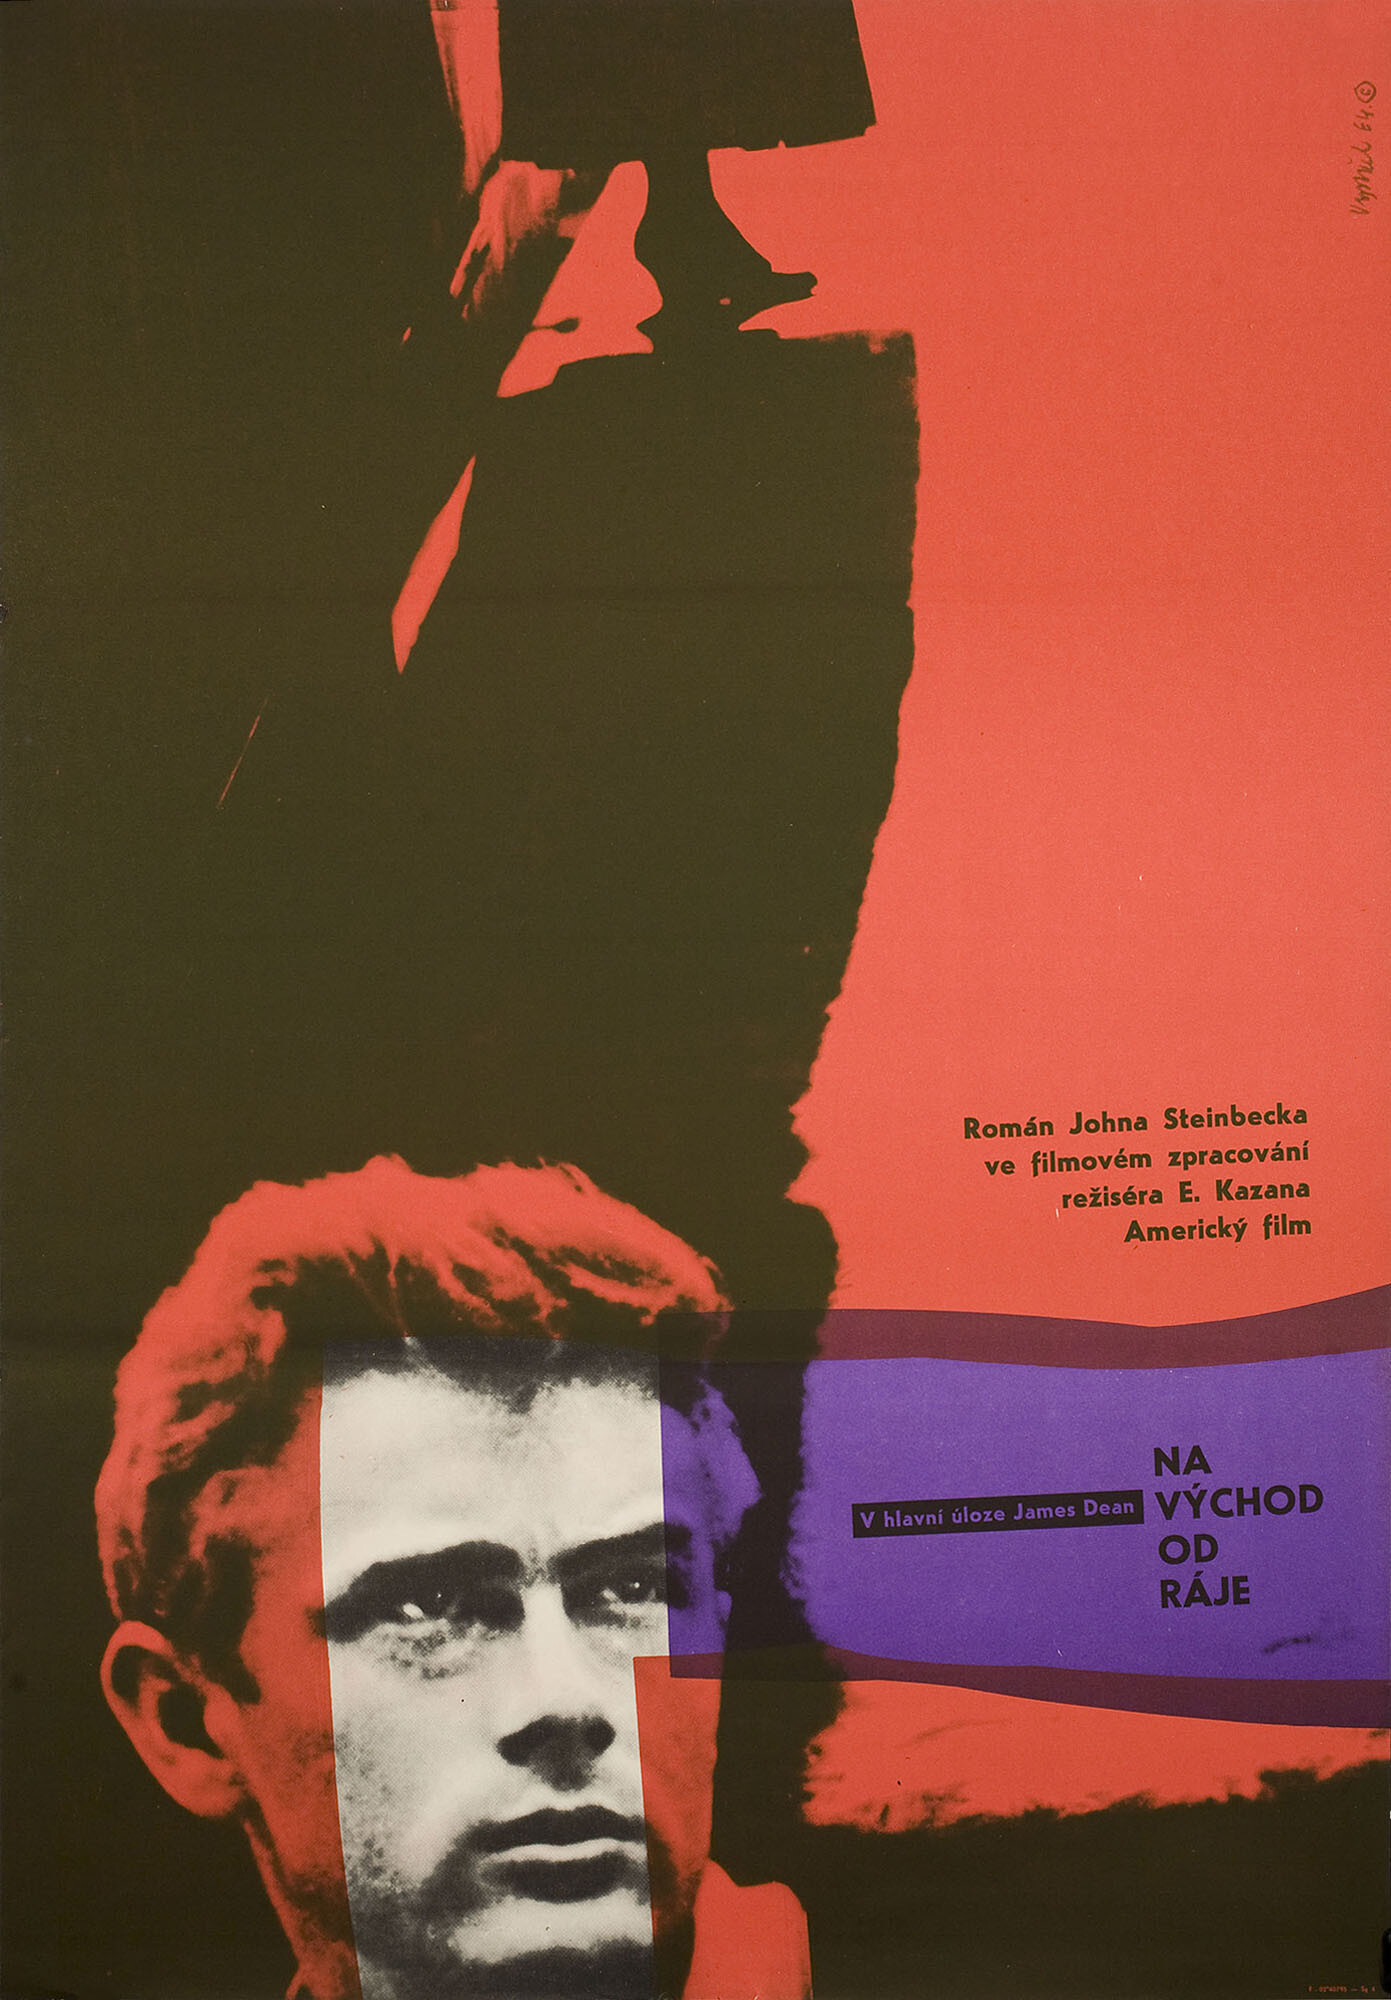 К востоку от рая (East of Eden, 1955), режиссёр Элия Казан, минималистичный постер к фильму (Чехословакия, 1964 год), автор Мирослав Выстрчил